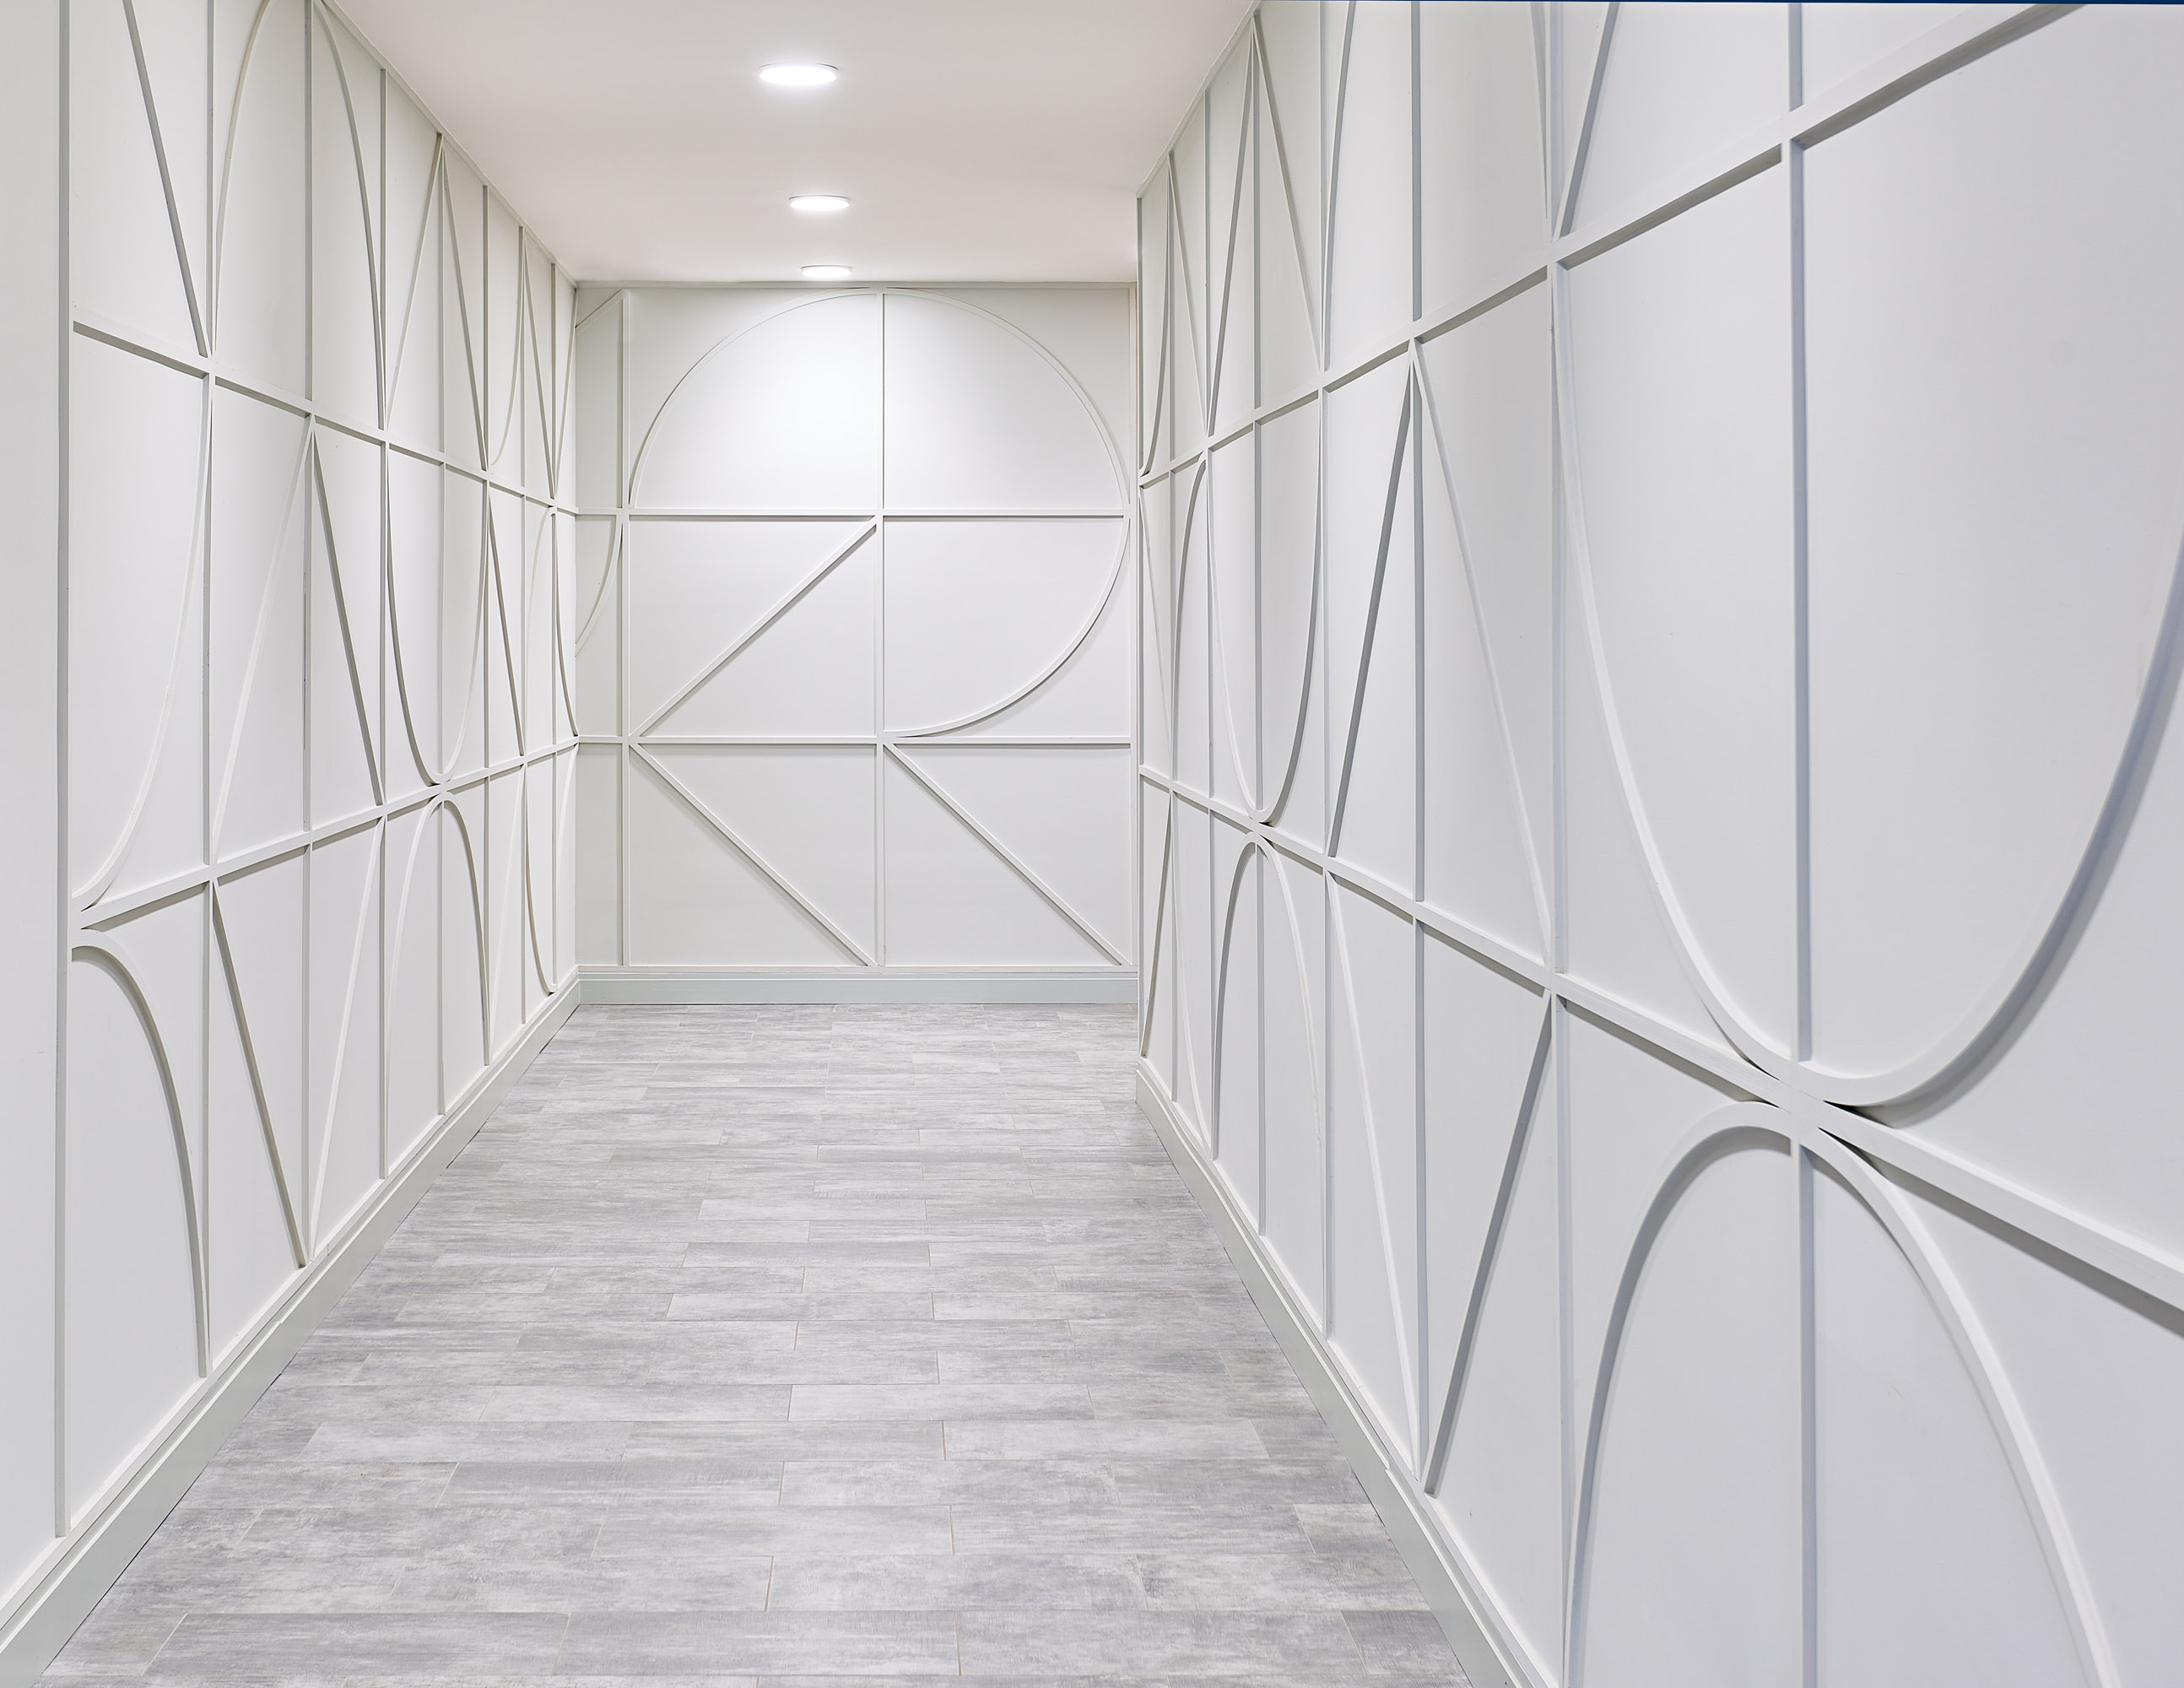 Dey & Bergen modern white hallway interior